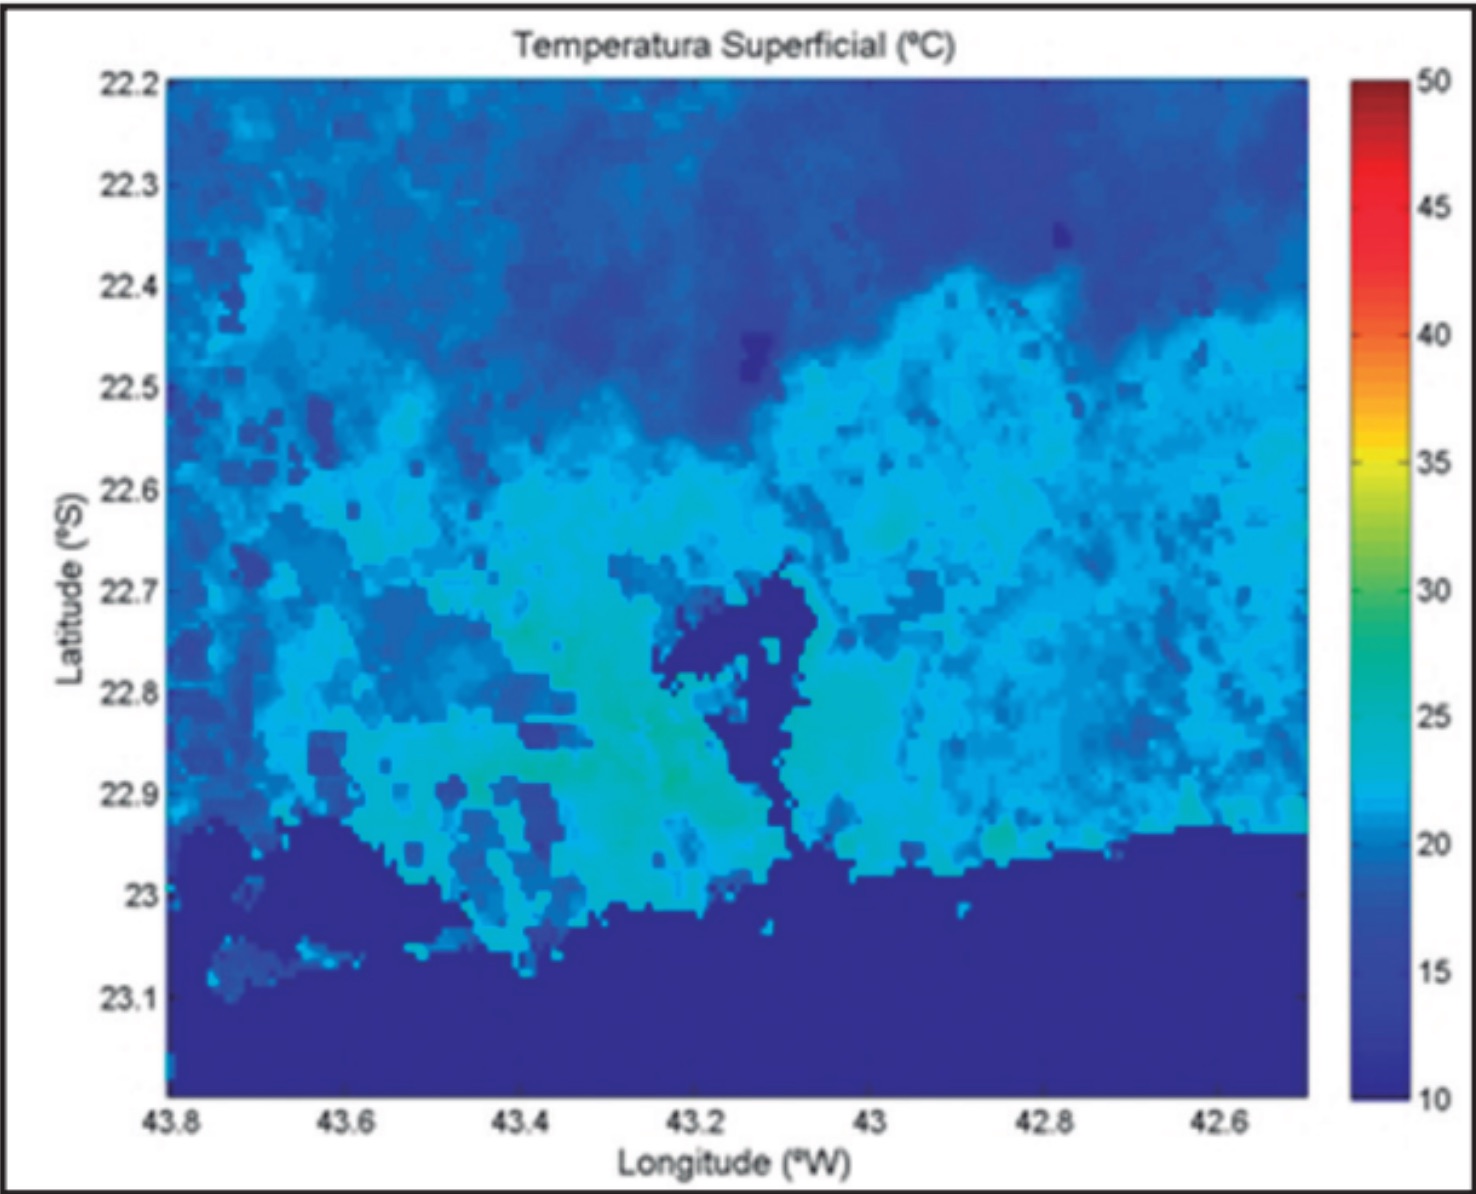 Média da temperatura Superficial Continental no verão em 02:00 UTC (23:00, horário do Rio).